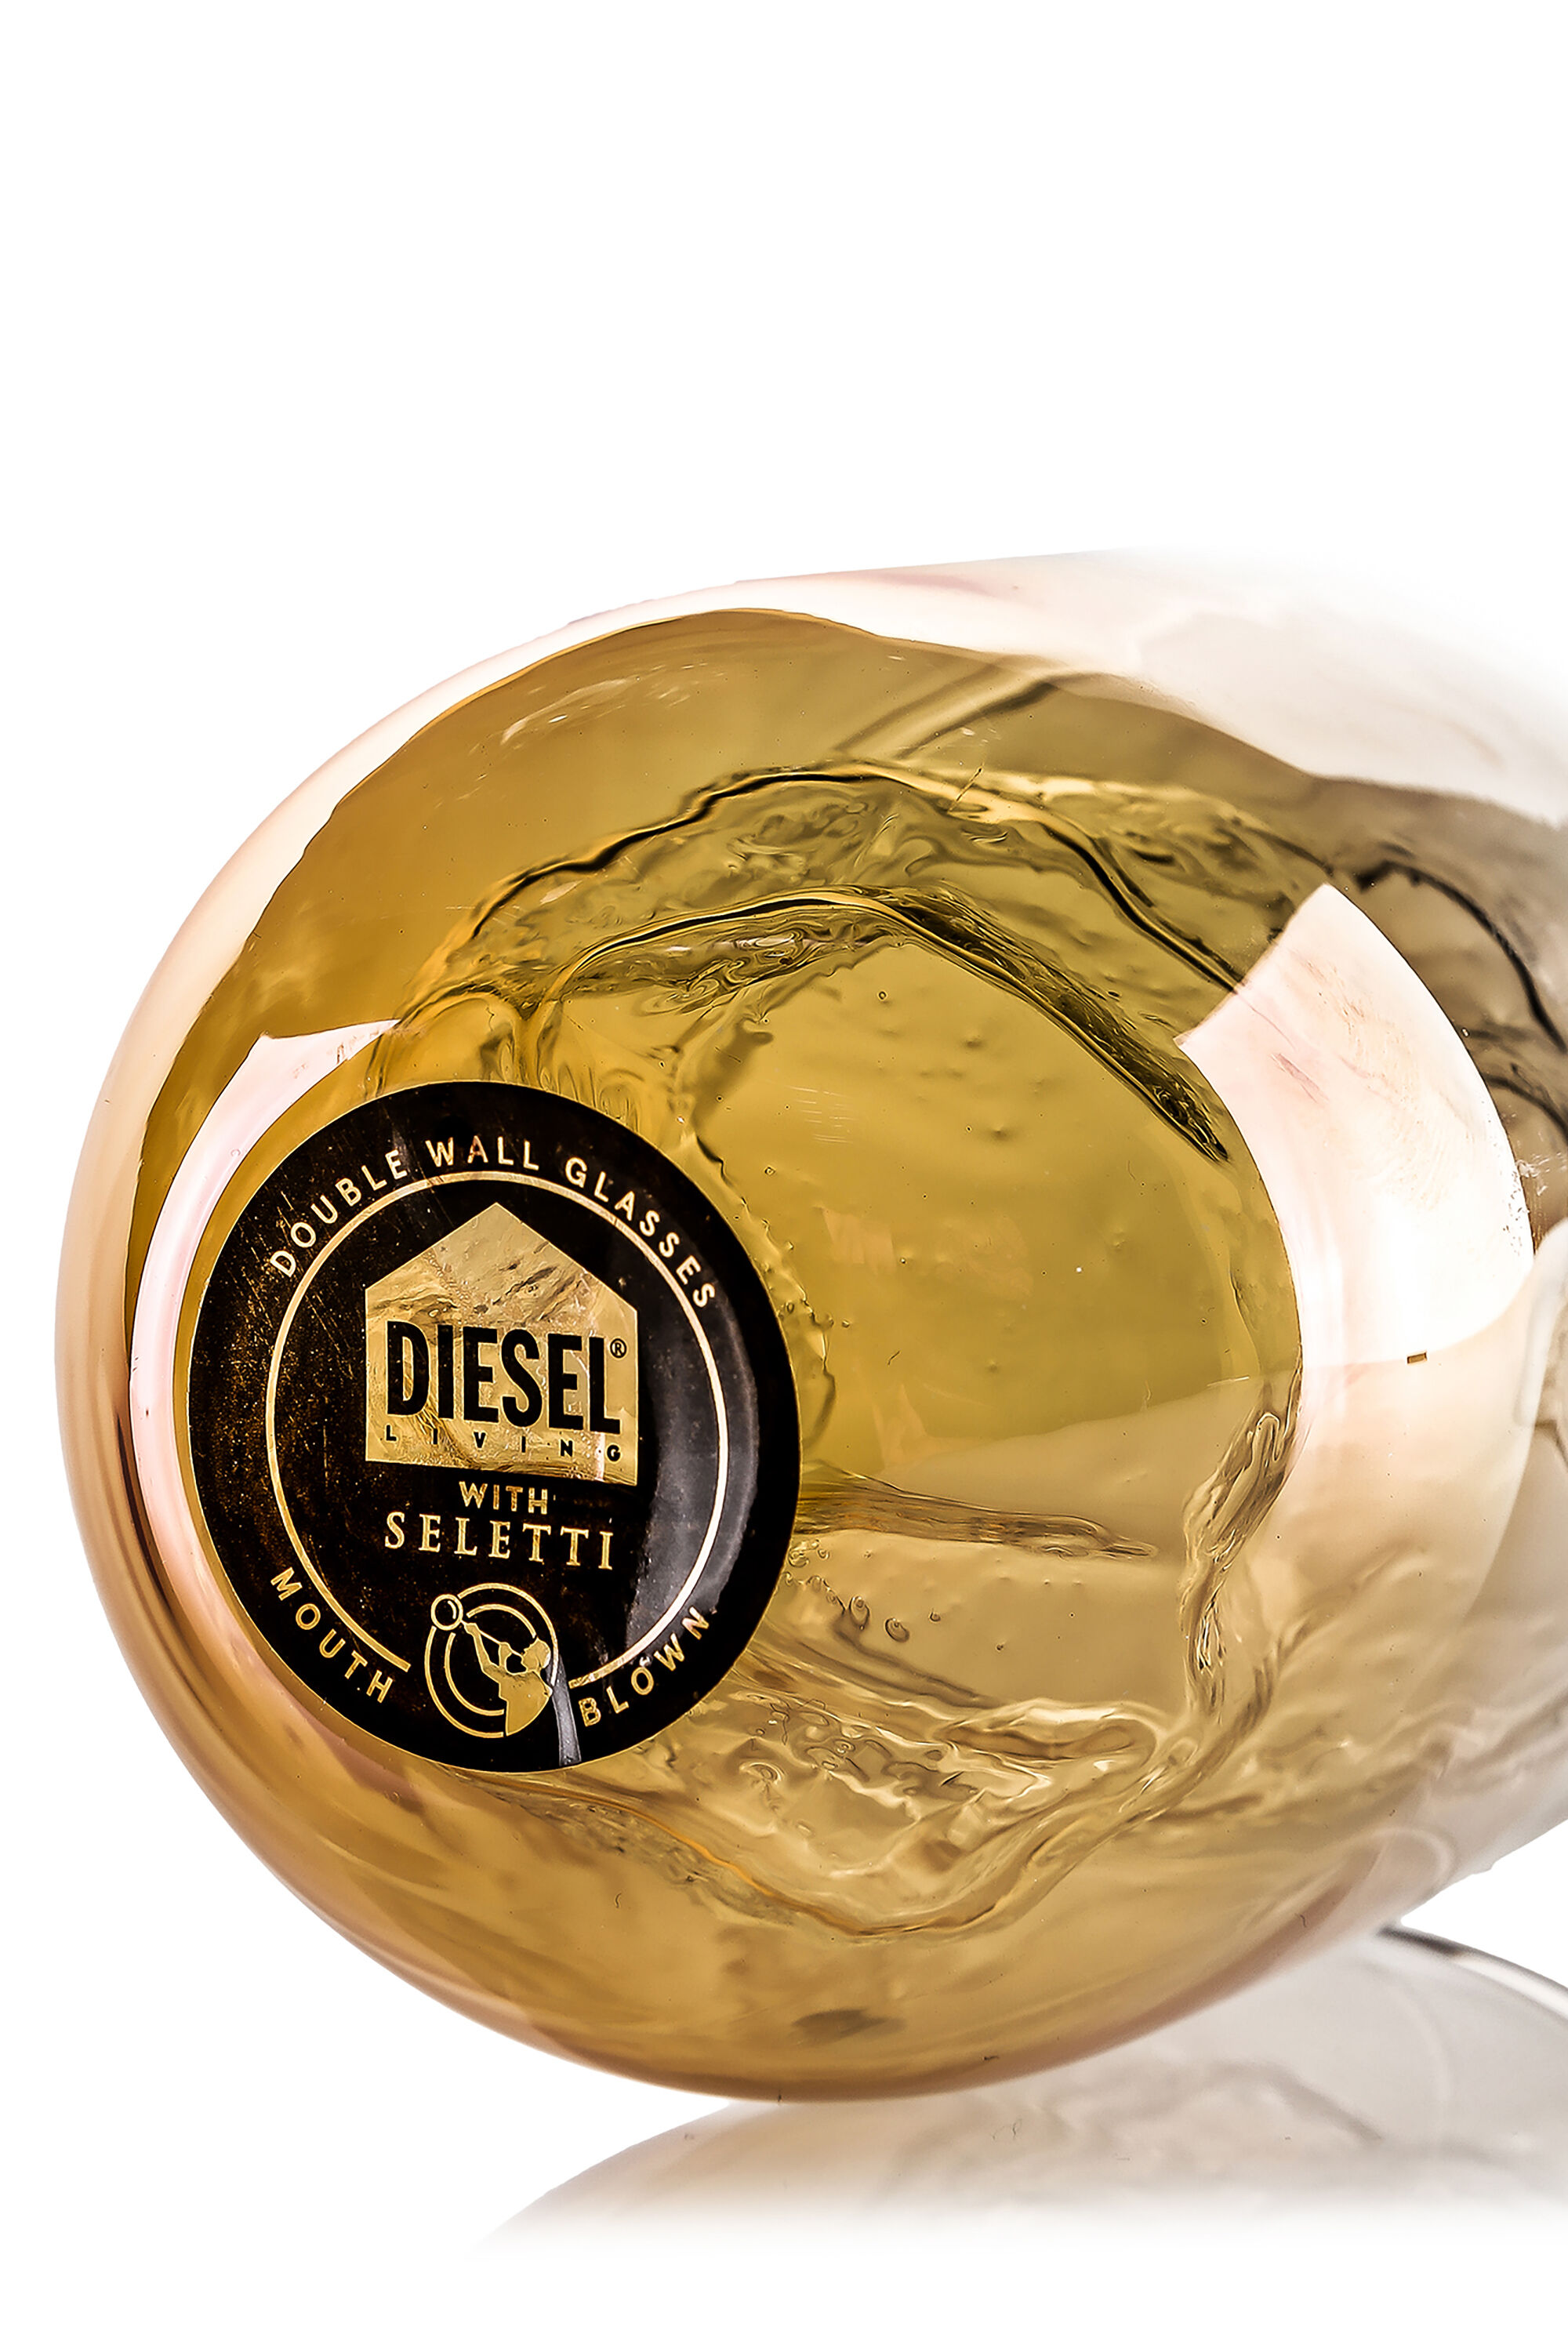 Diesel - 10935 COSMIC DINER, Honey - Image 3